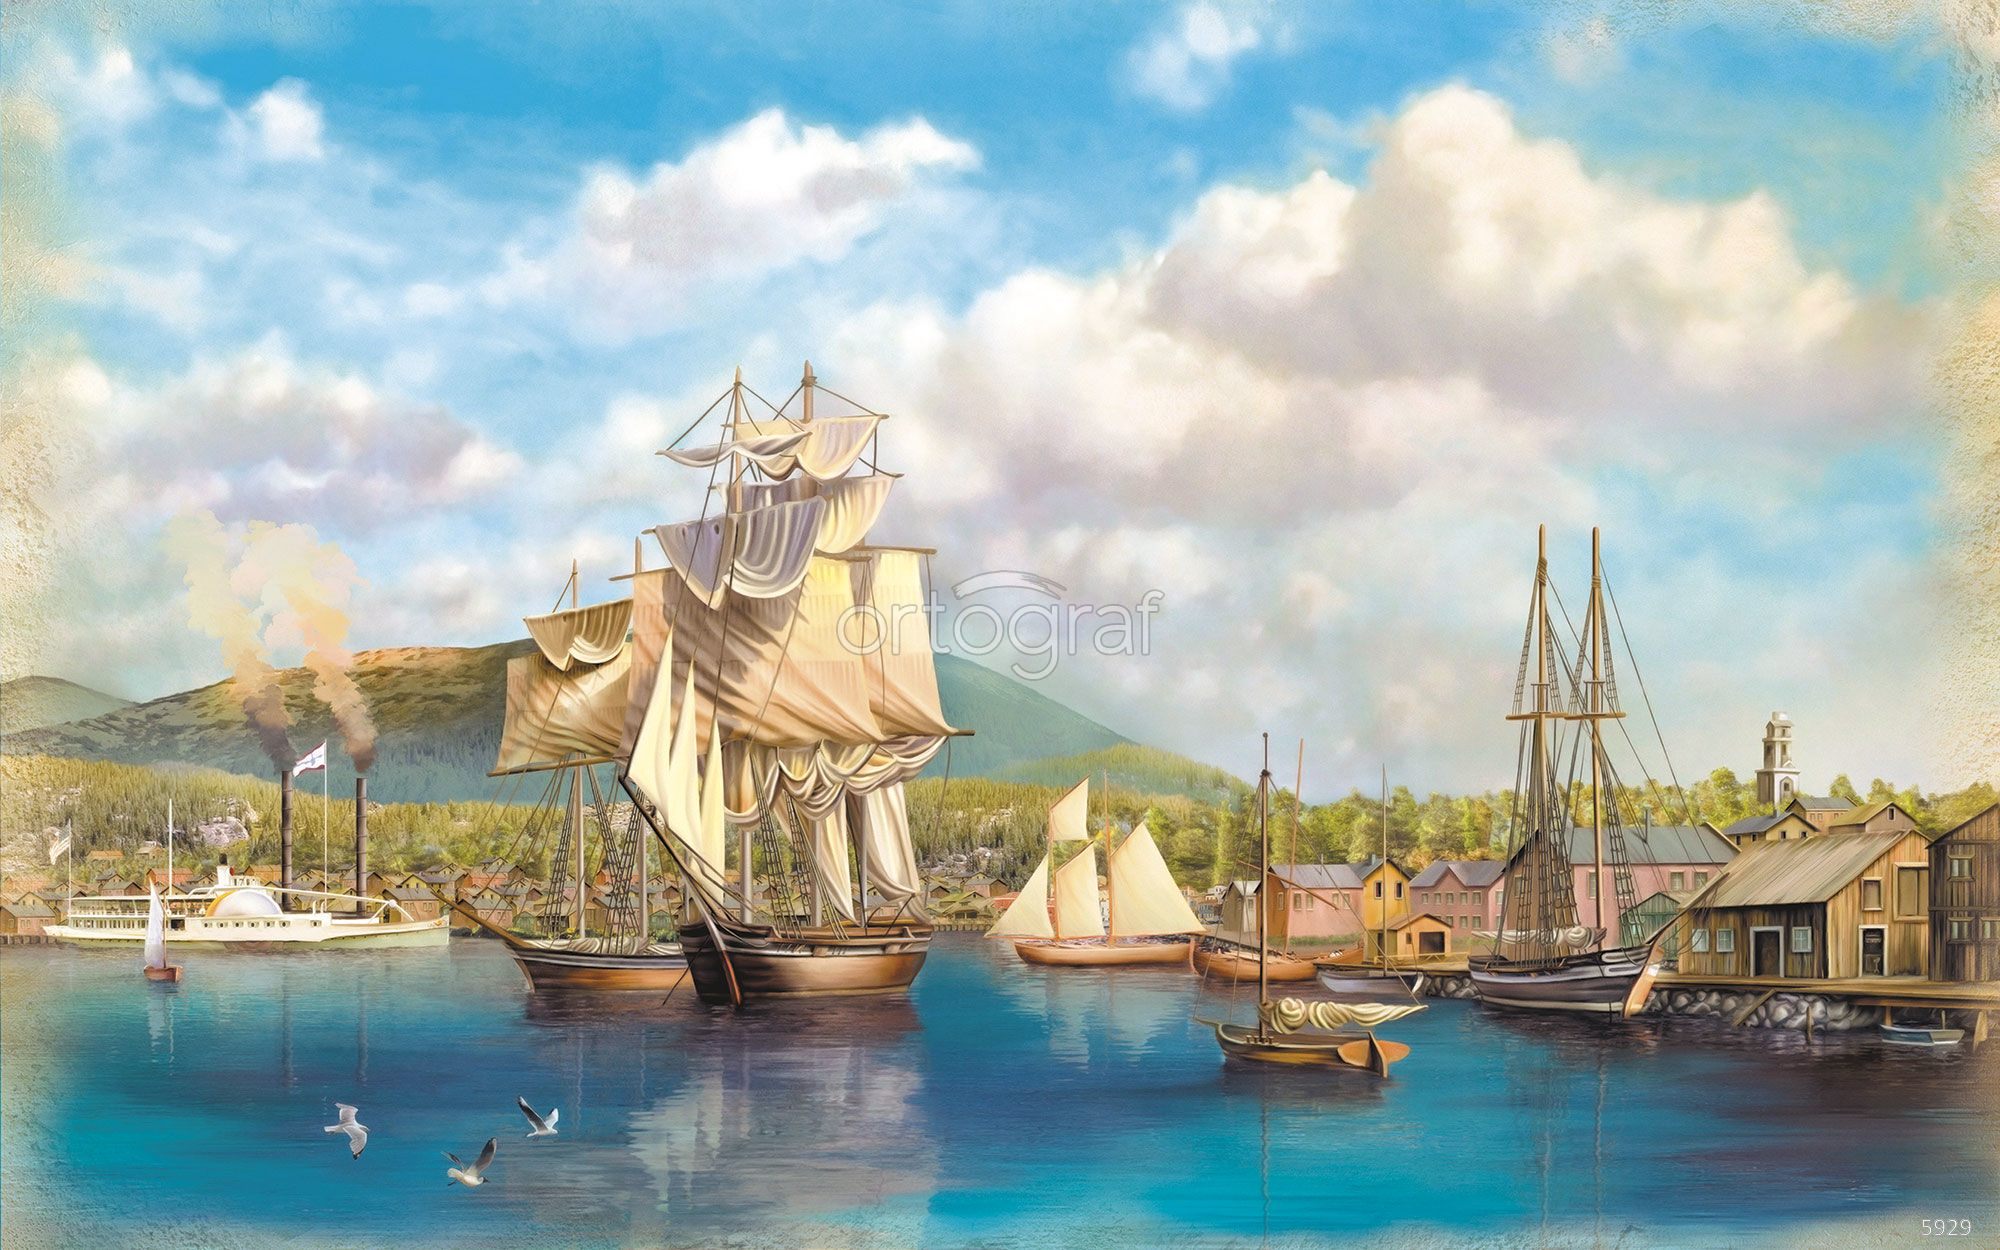 Город фрегат. Корабль в Гавани. Пейзаж с кораблем. Пристань с кораблями. Старинные корабли в порту.